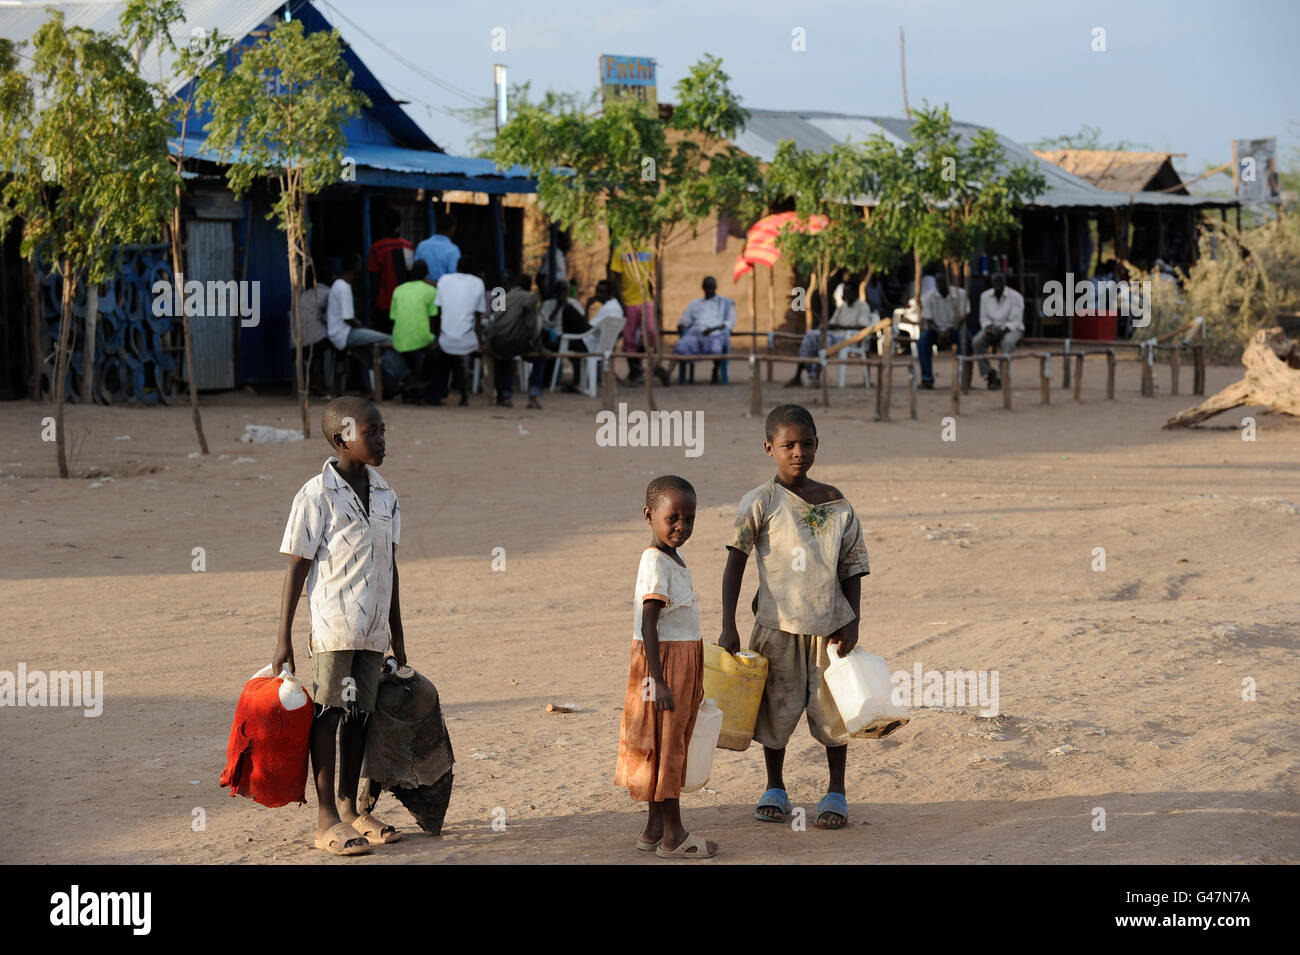 La région de Turkana au Kenya, le HCR, le camp de réfugiés de Kakuma où 80,000 permanent des réfugiés de Somalie, l'Éthiopie, le Soudan du Sud vivent / Fluechtlingslager à Kakuma, le HCR Kenya Turkana der Region , hier leben ca. 80000 Fluechtlinge Aethiopien aus Somalie Soudan Banque D'Images